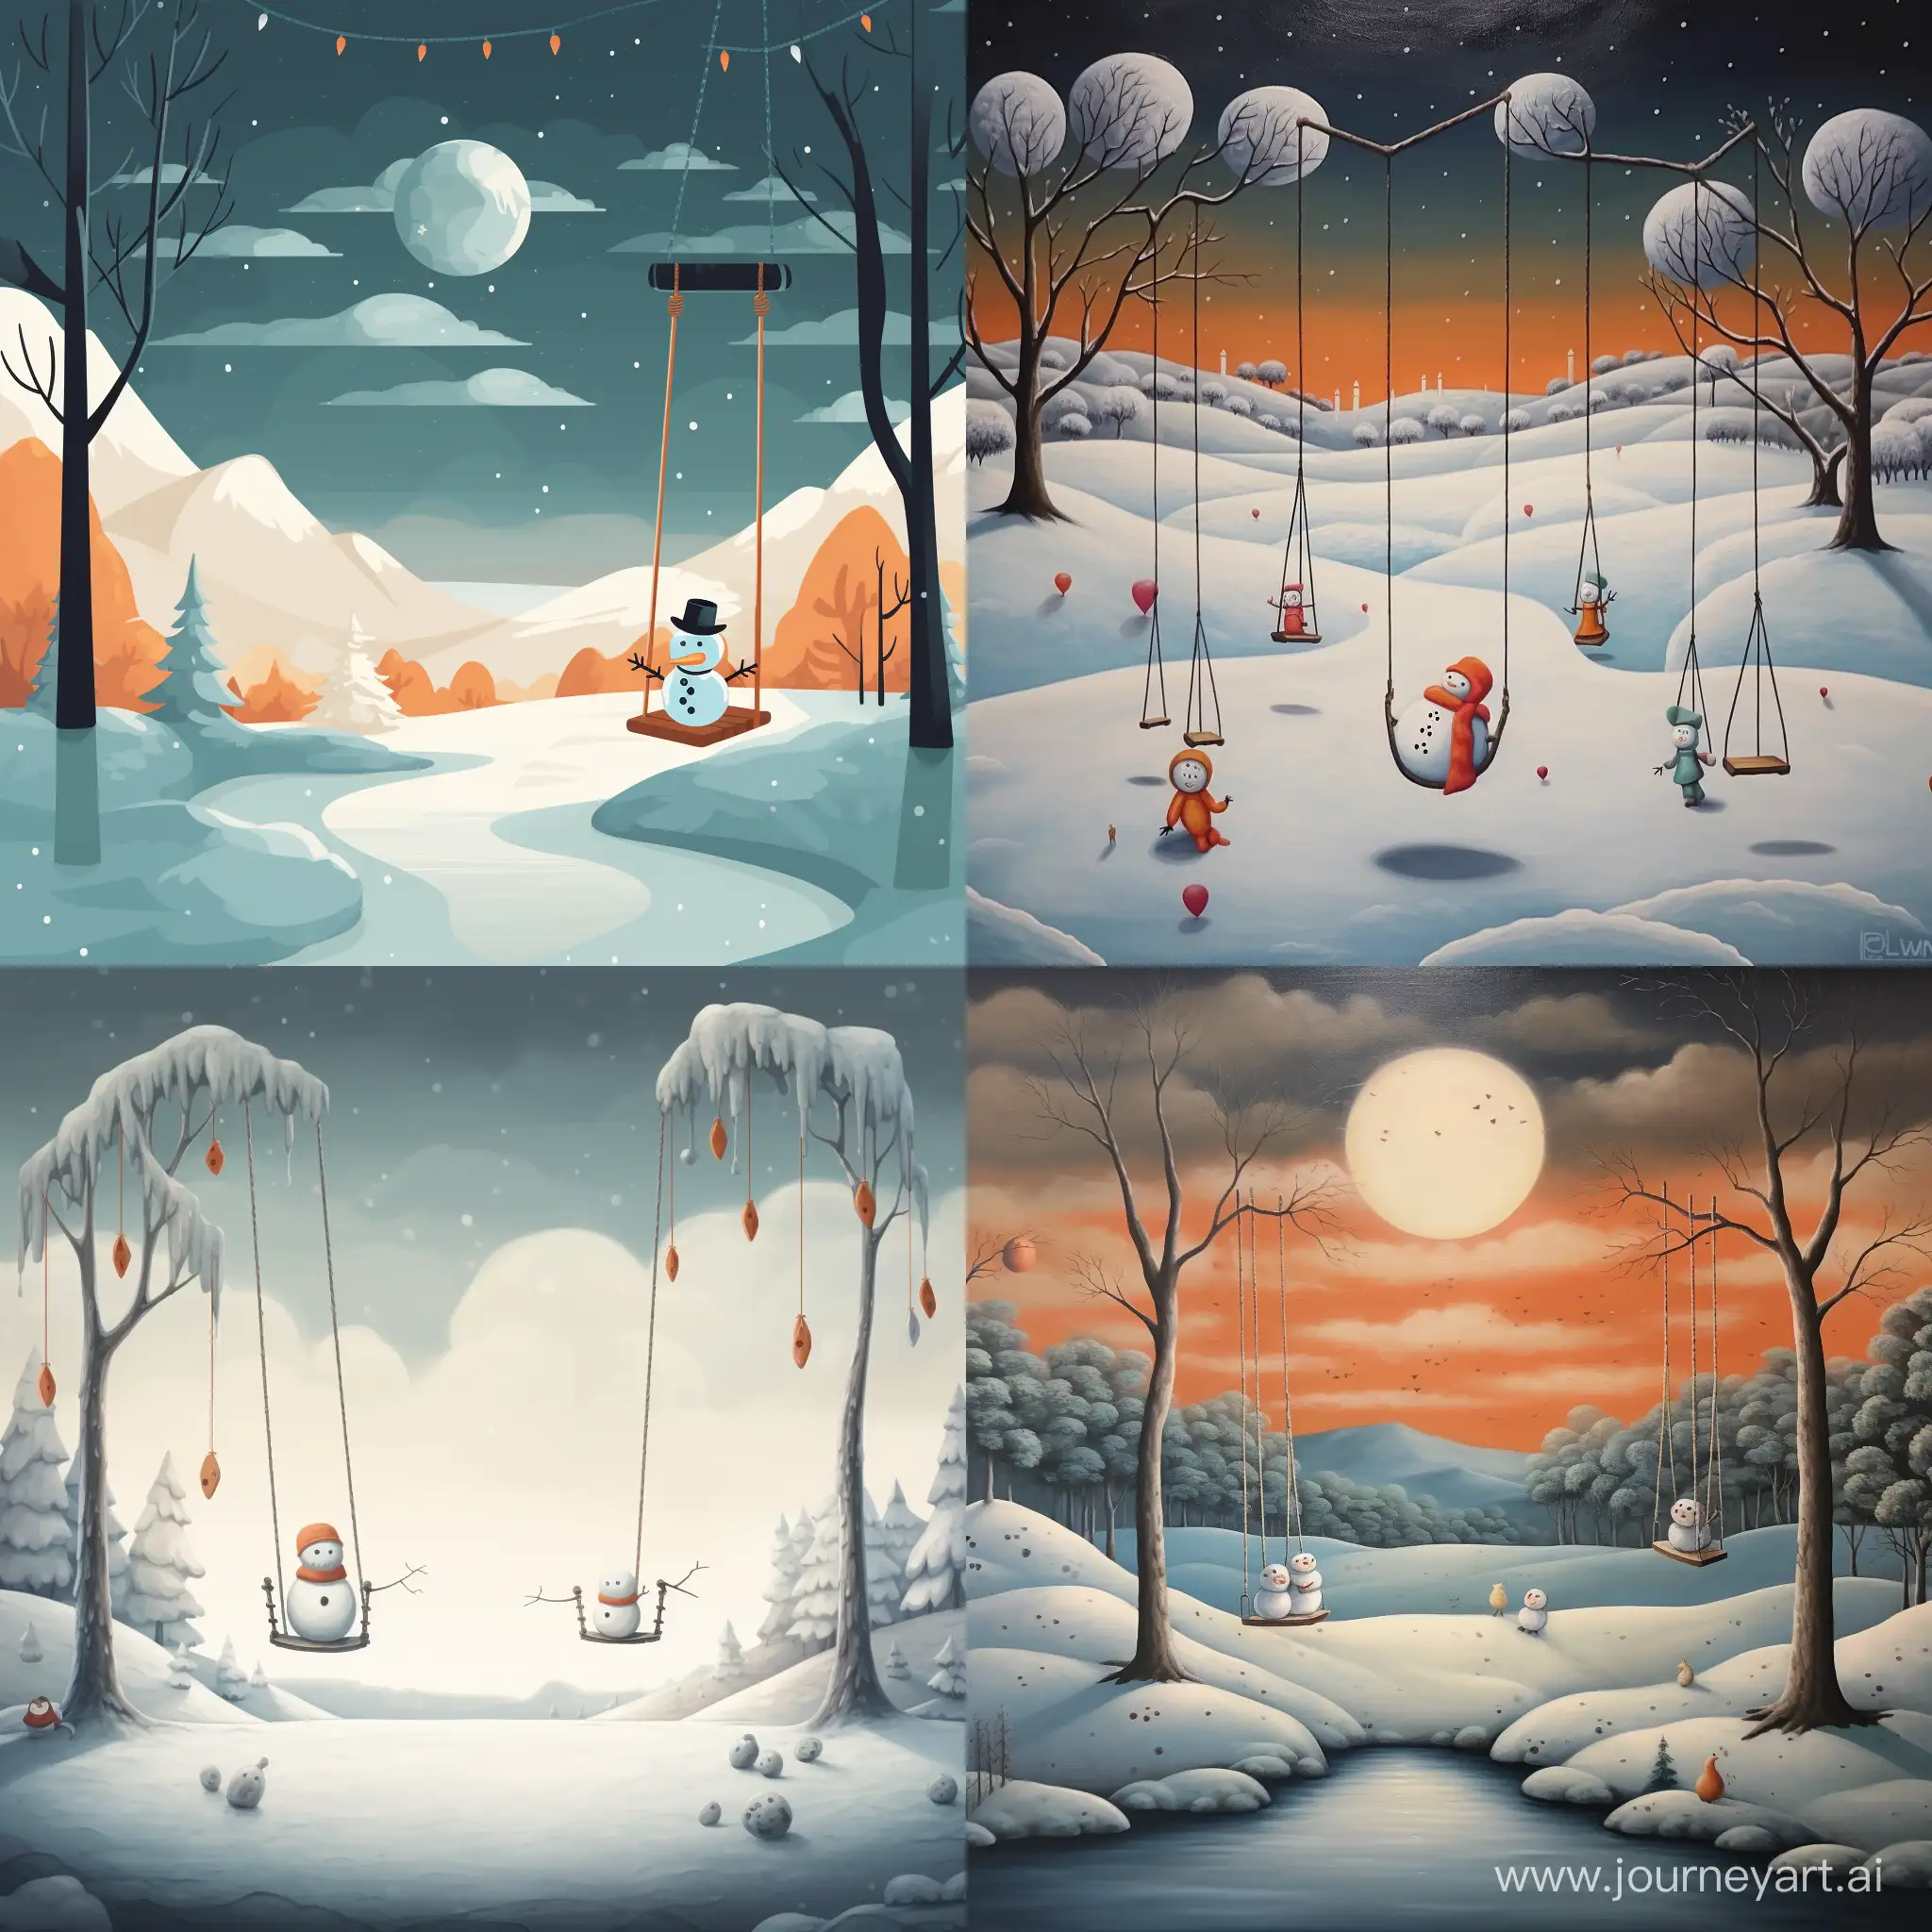 Joyful-Snowman-Swinging-in-a-Snowy-Landscape